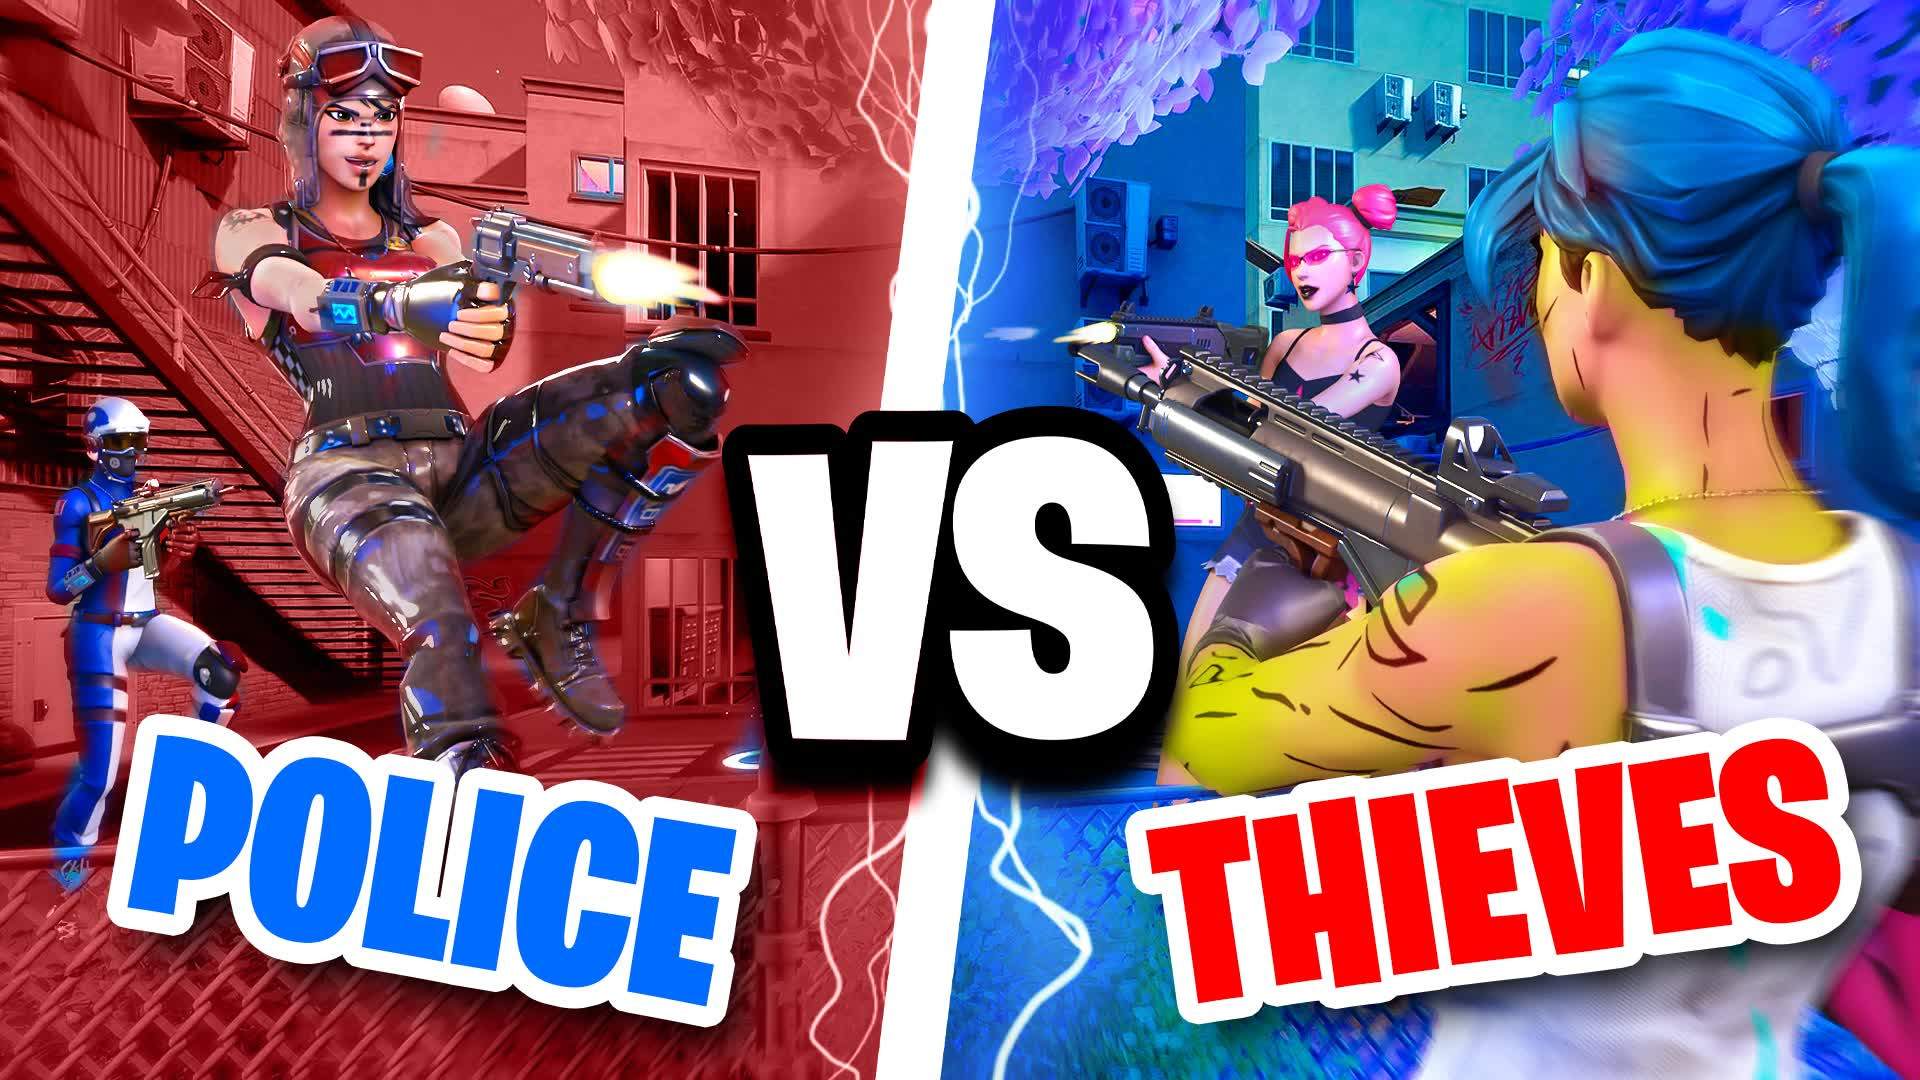 Police VS Thieves - Urban Showdown